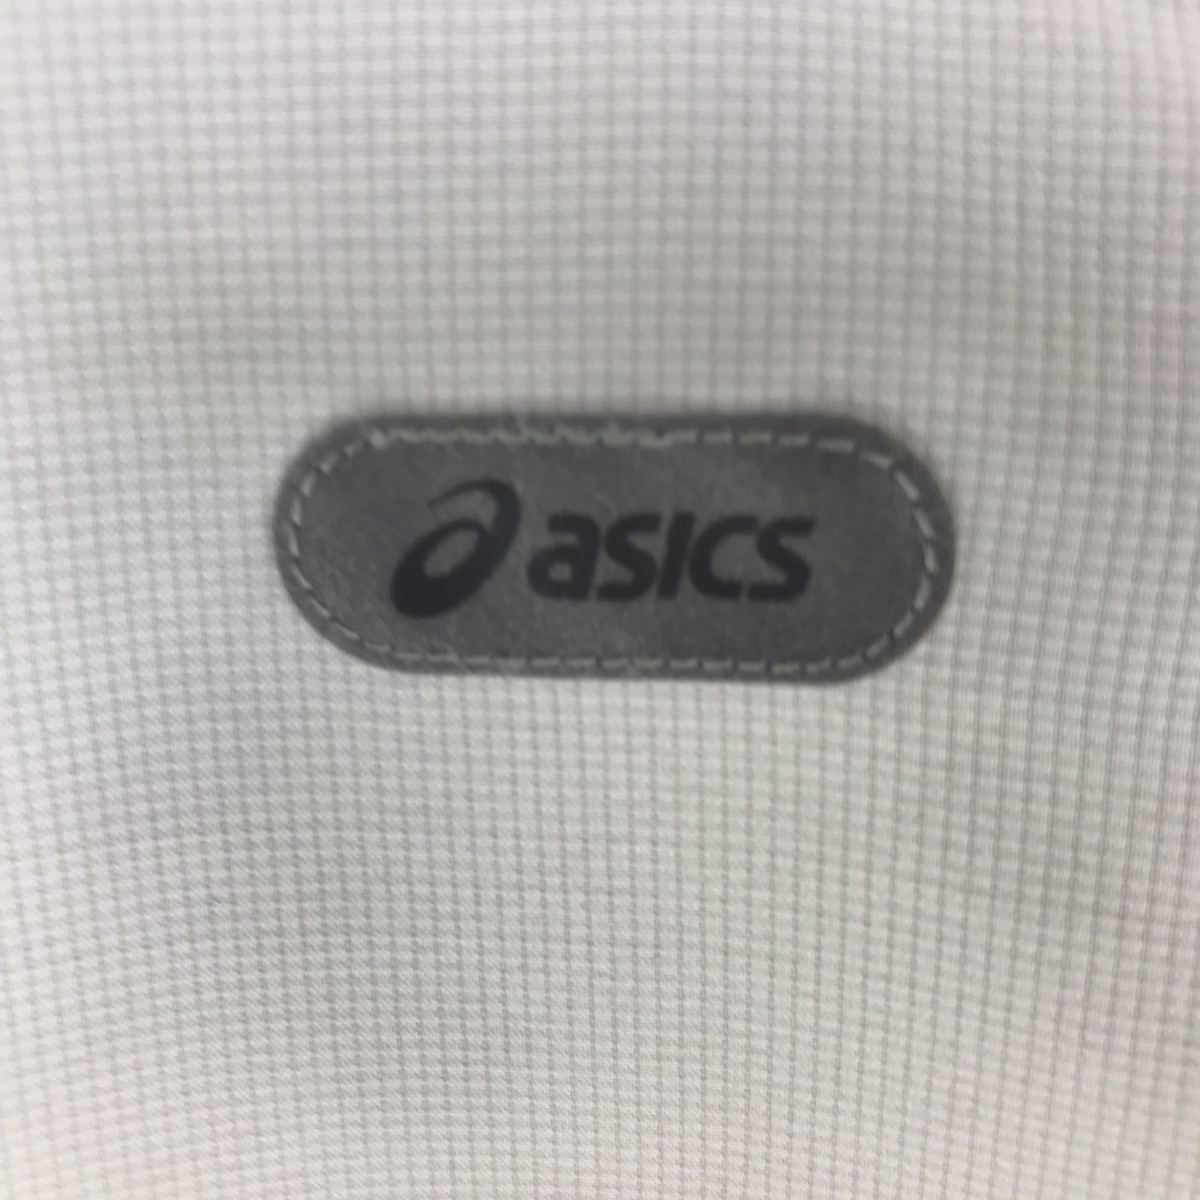 Asics windbreaker Jacket/ Full Zipper Sportwear Sweater - 2